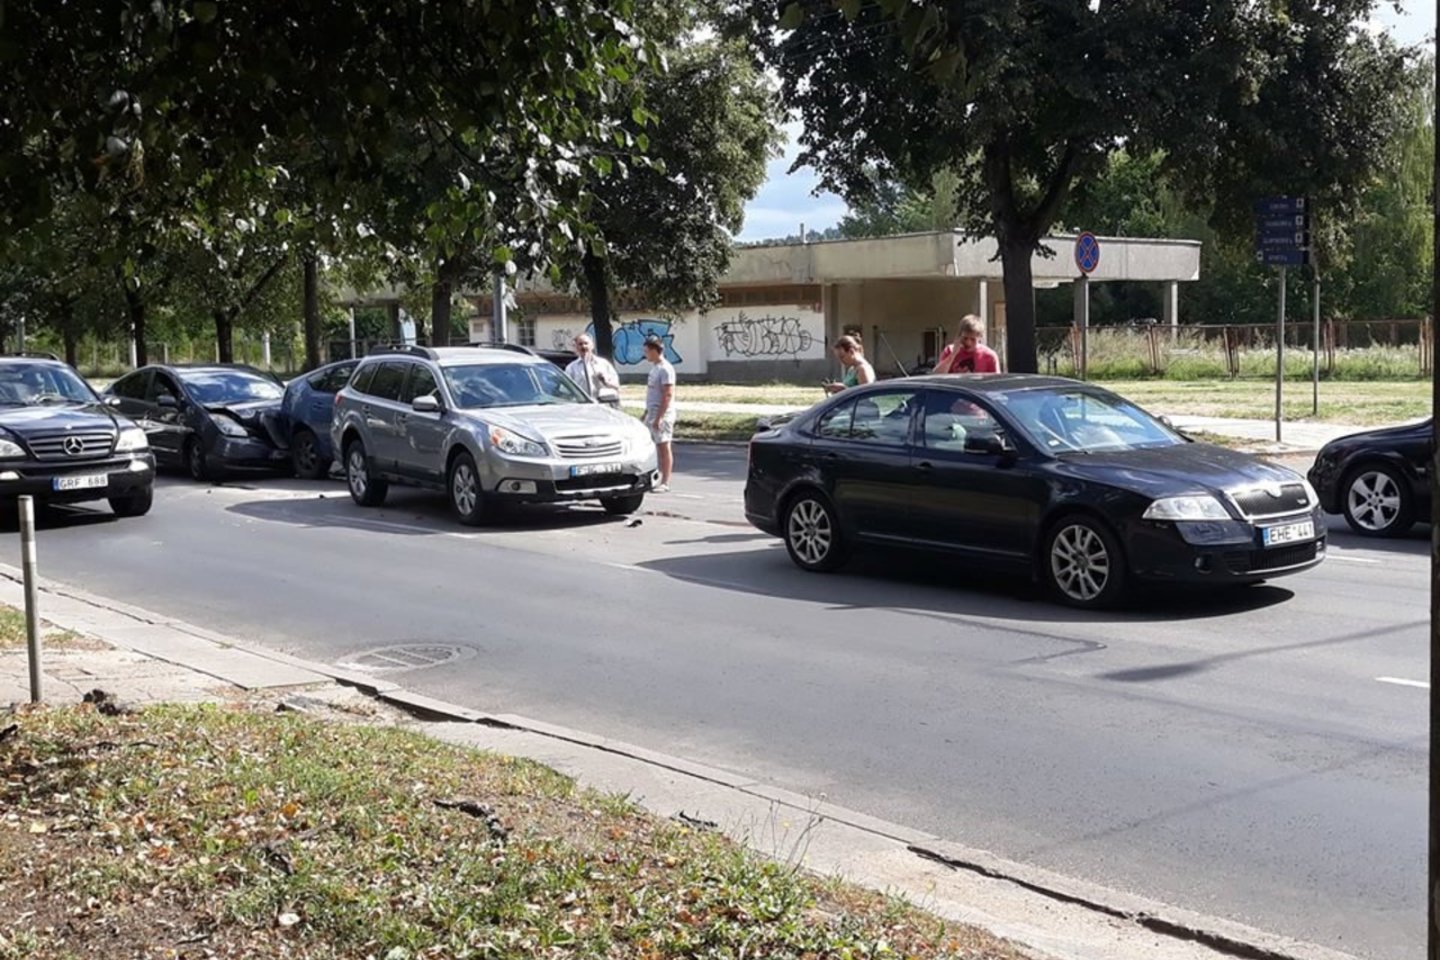  4 automobilių avarija Vilniuje trumpam sutrikdė eismą judrioje gatvėje.<br>Facebook/Reidas Vilniuje/Mindaugo J. nuotr.